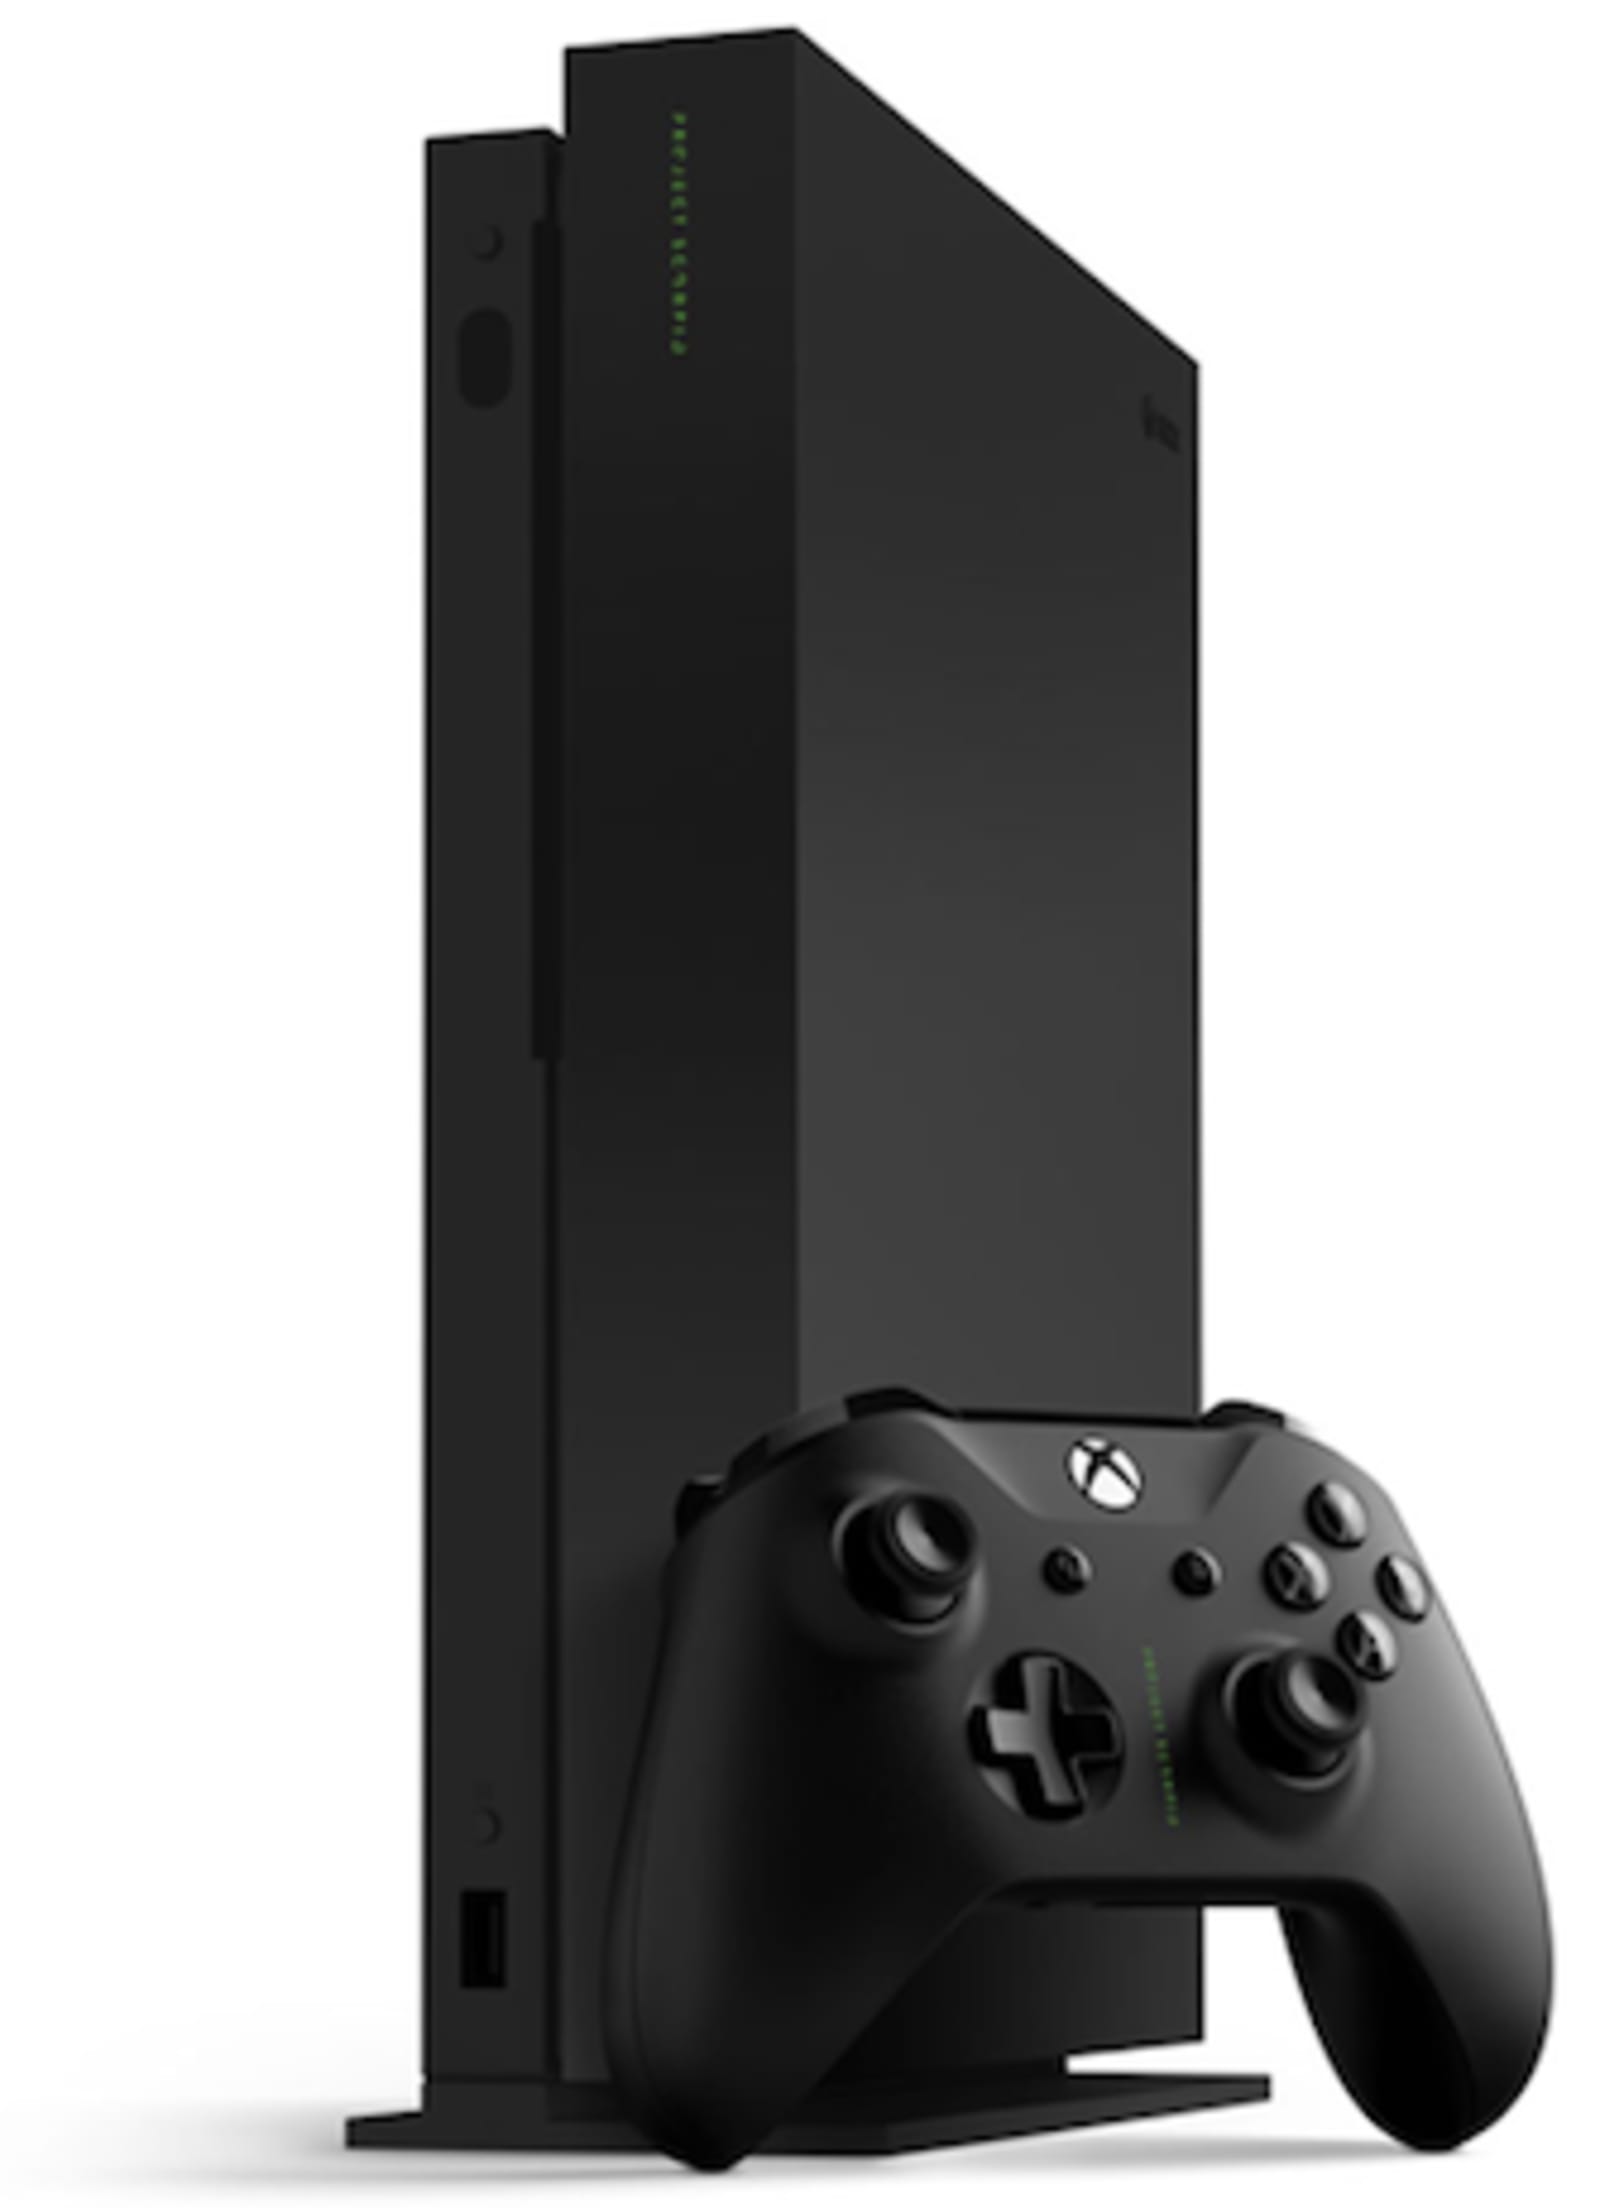 Хбох пк. Xbox one x 1tb. Игровая приставка Xbox one x 1tb. Игровая приставка Microsoft Xbox Series x 1 ТБ. Xbox Project Scorpio.